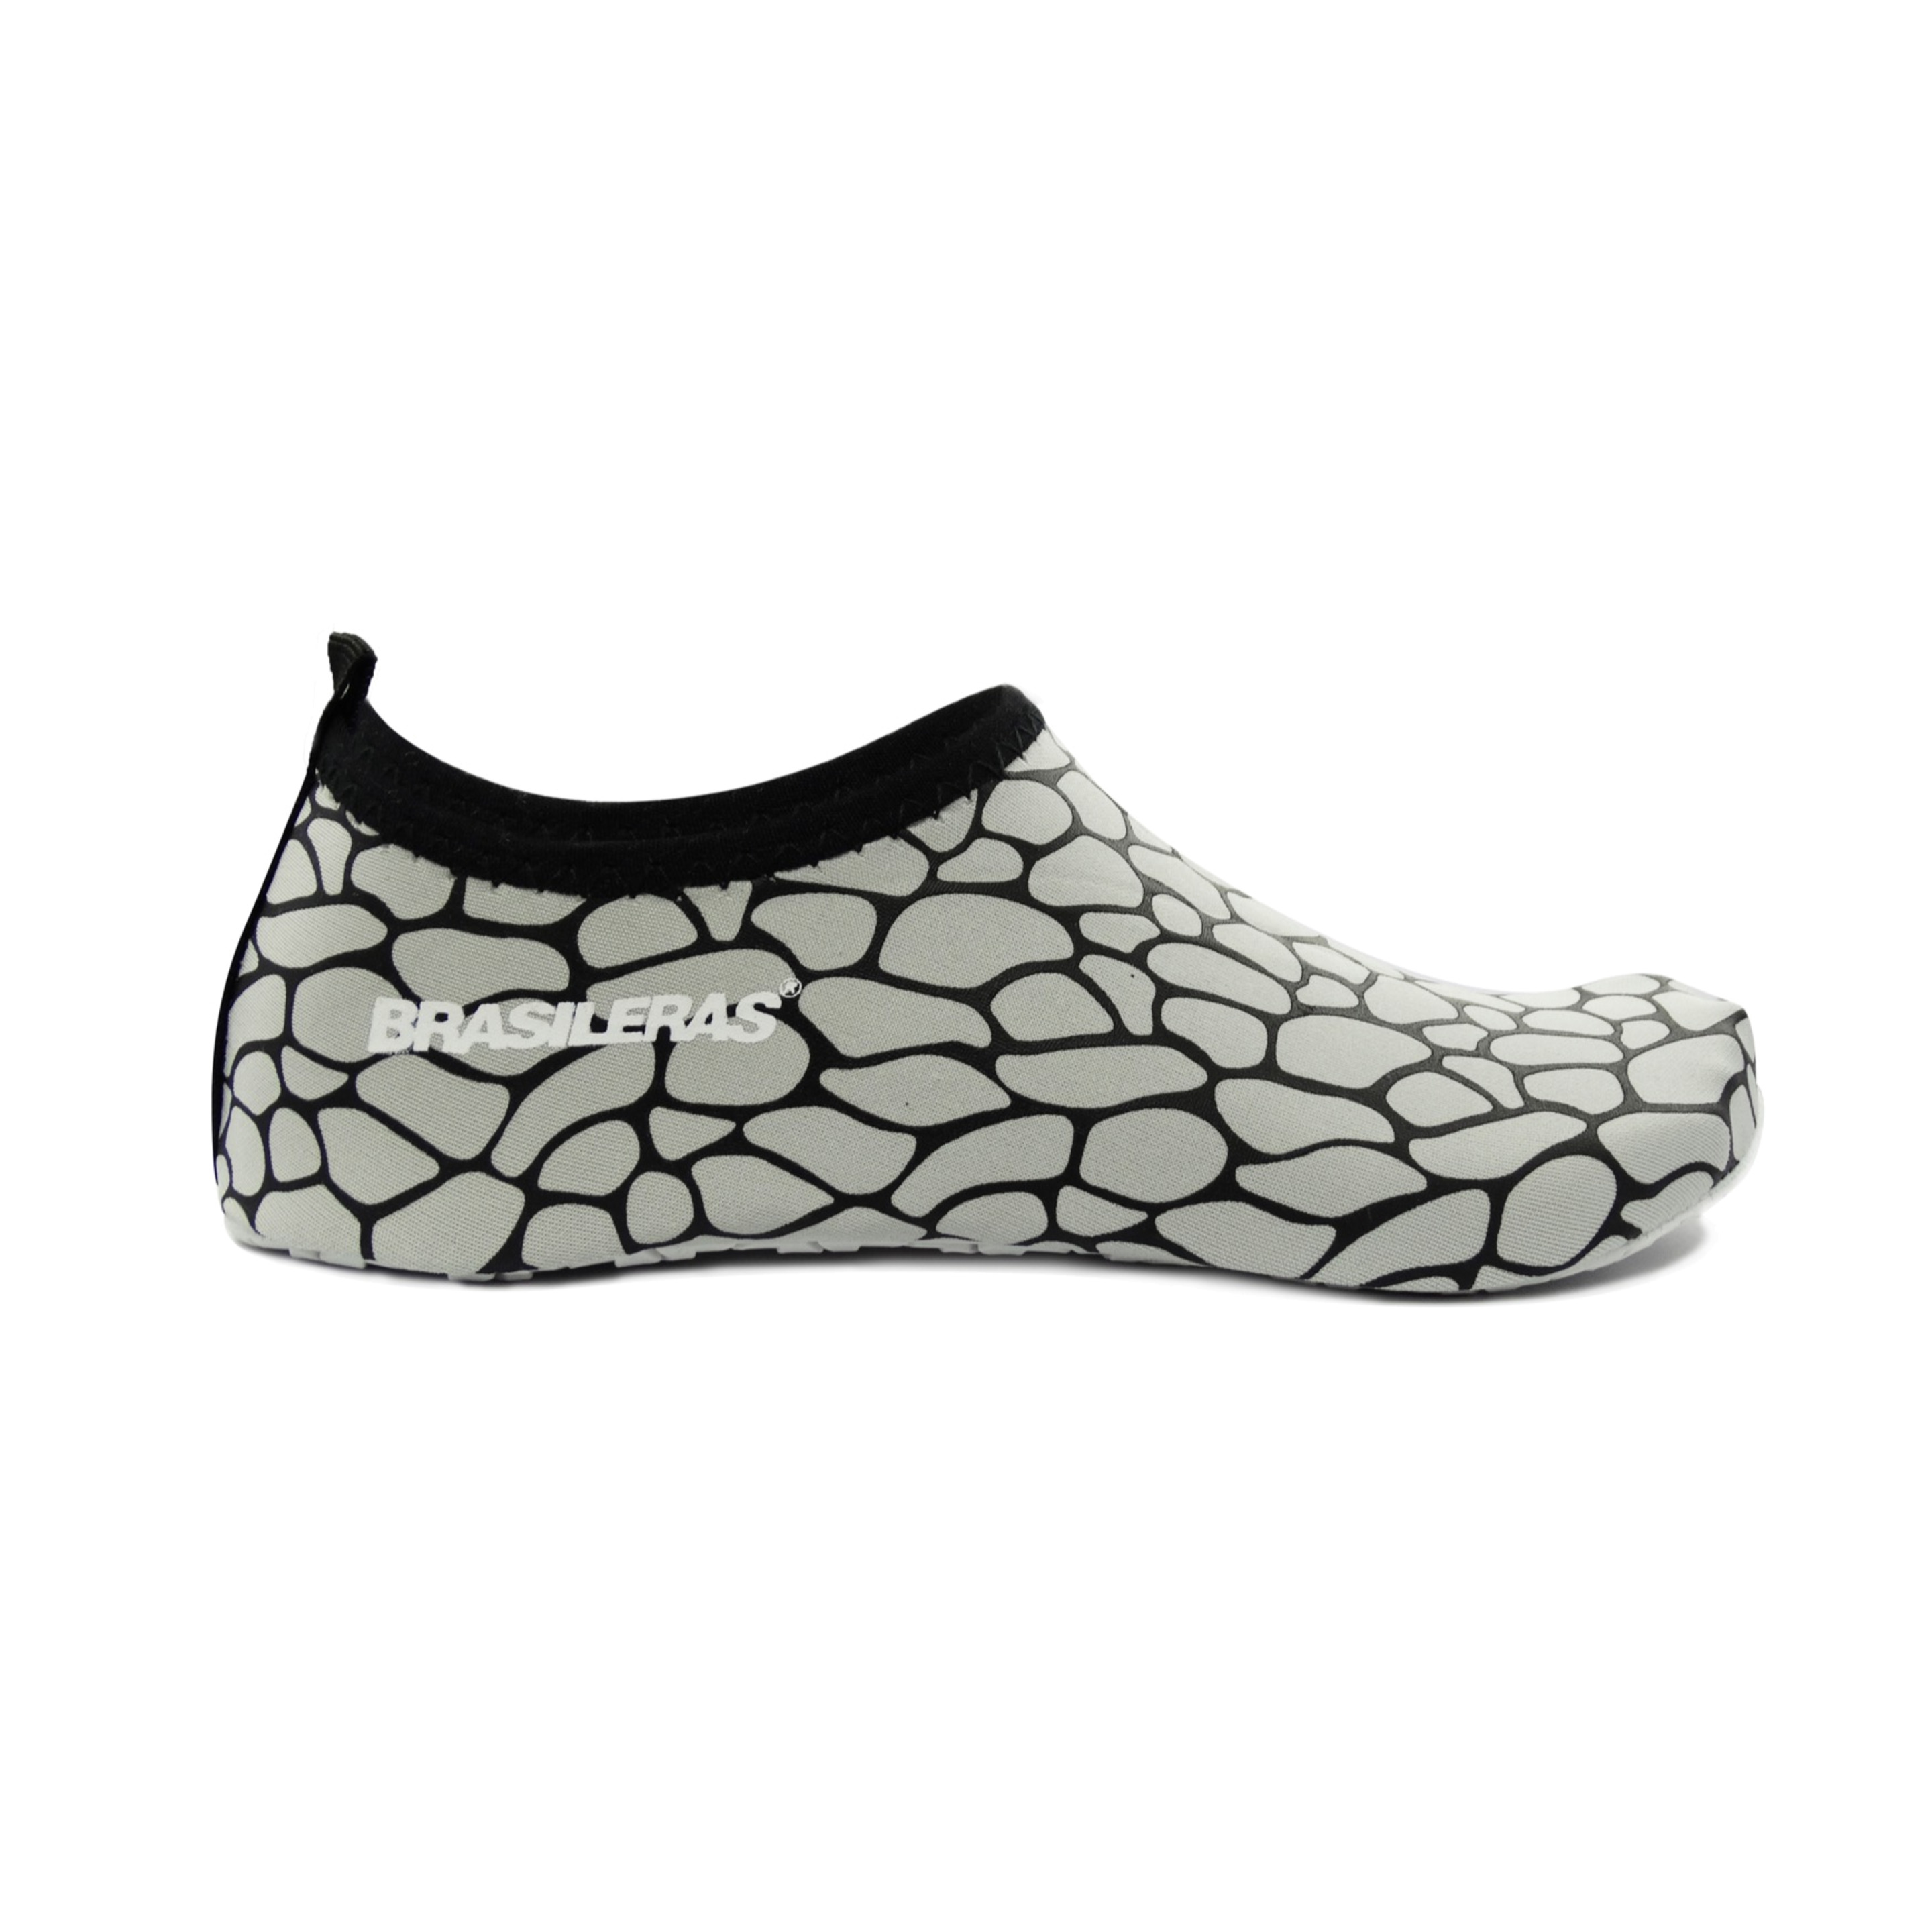 Zapato De Agua Brasileras,brasocks Stones - Blanco - Brasileras  MKP